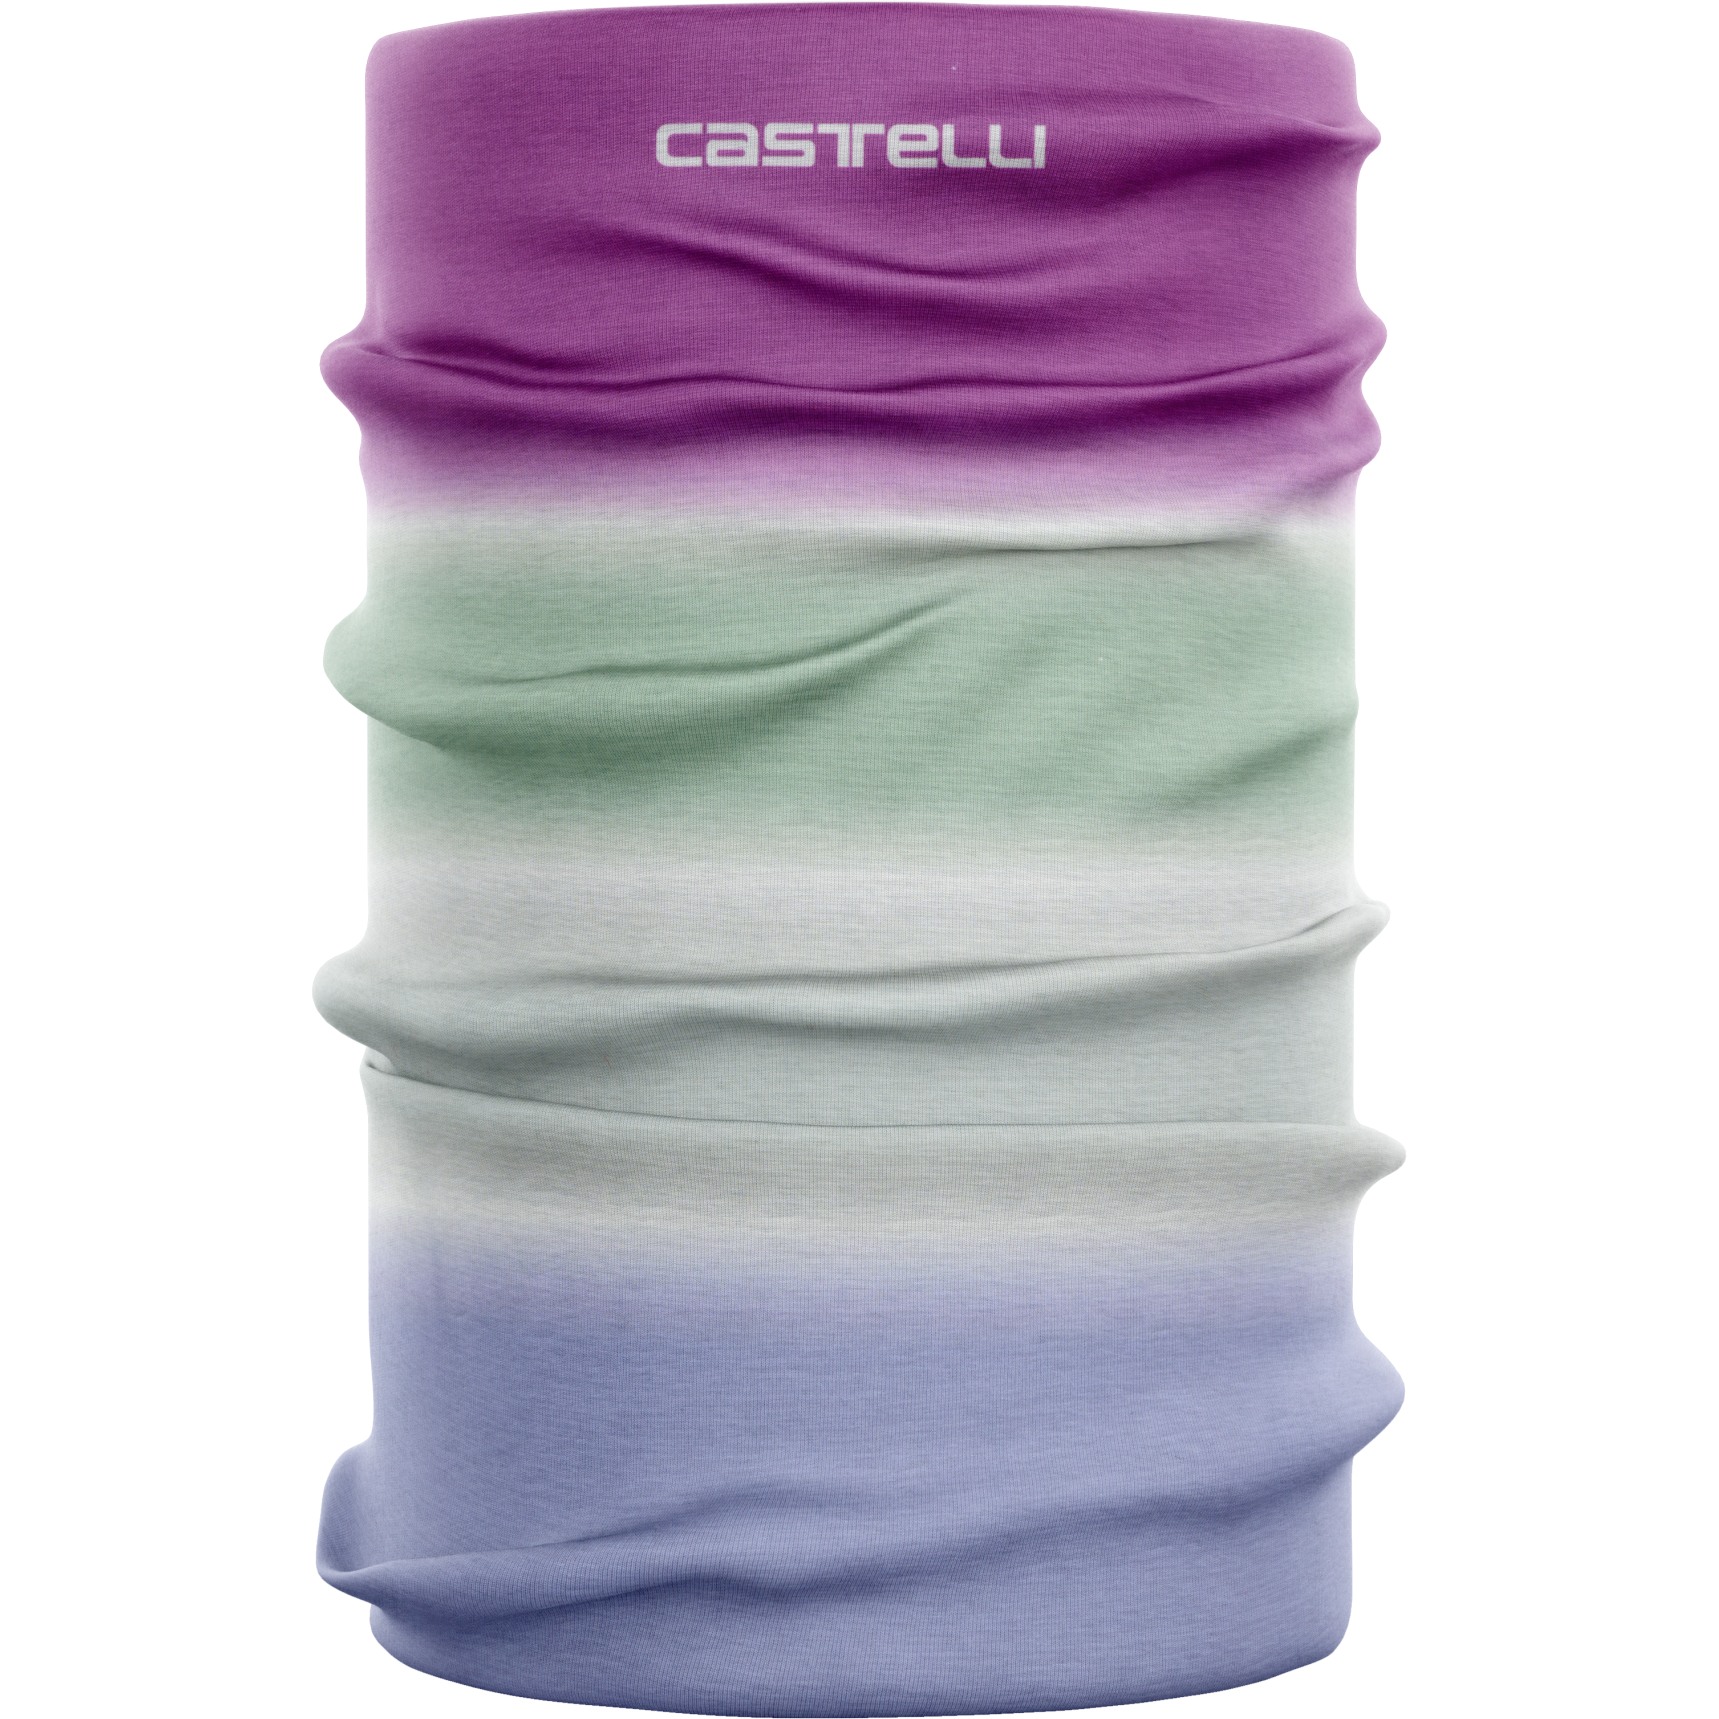 Produktbild von Castelli Light Head Thingy Schlauchschal Damen - violet mist/amethyst 534